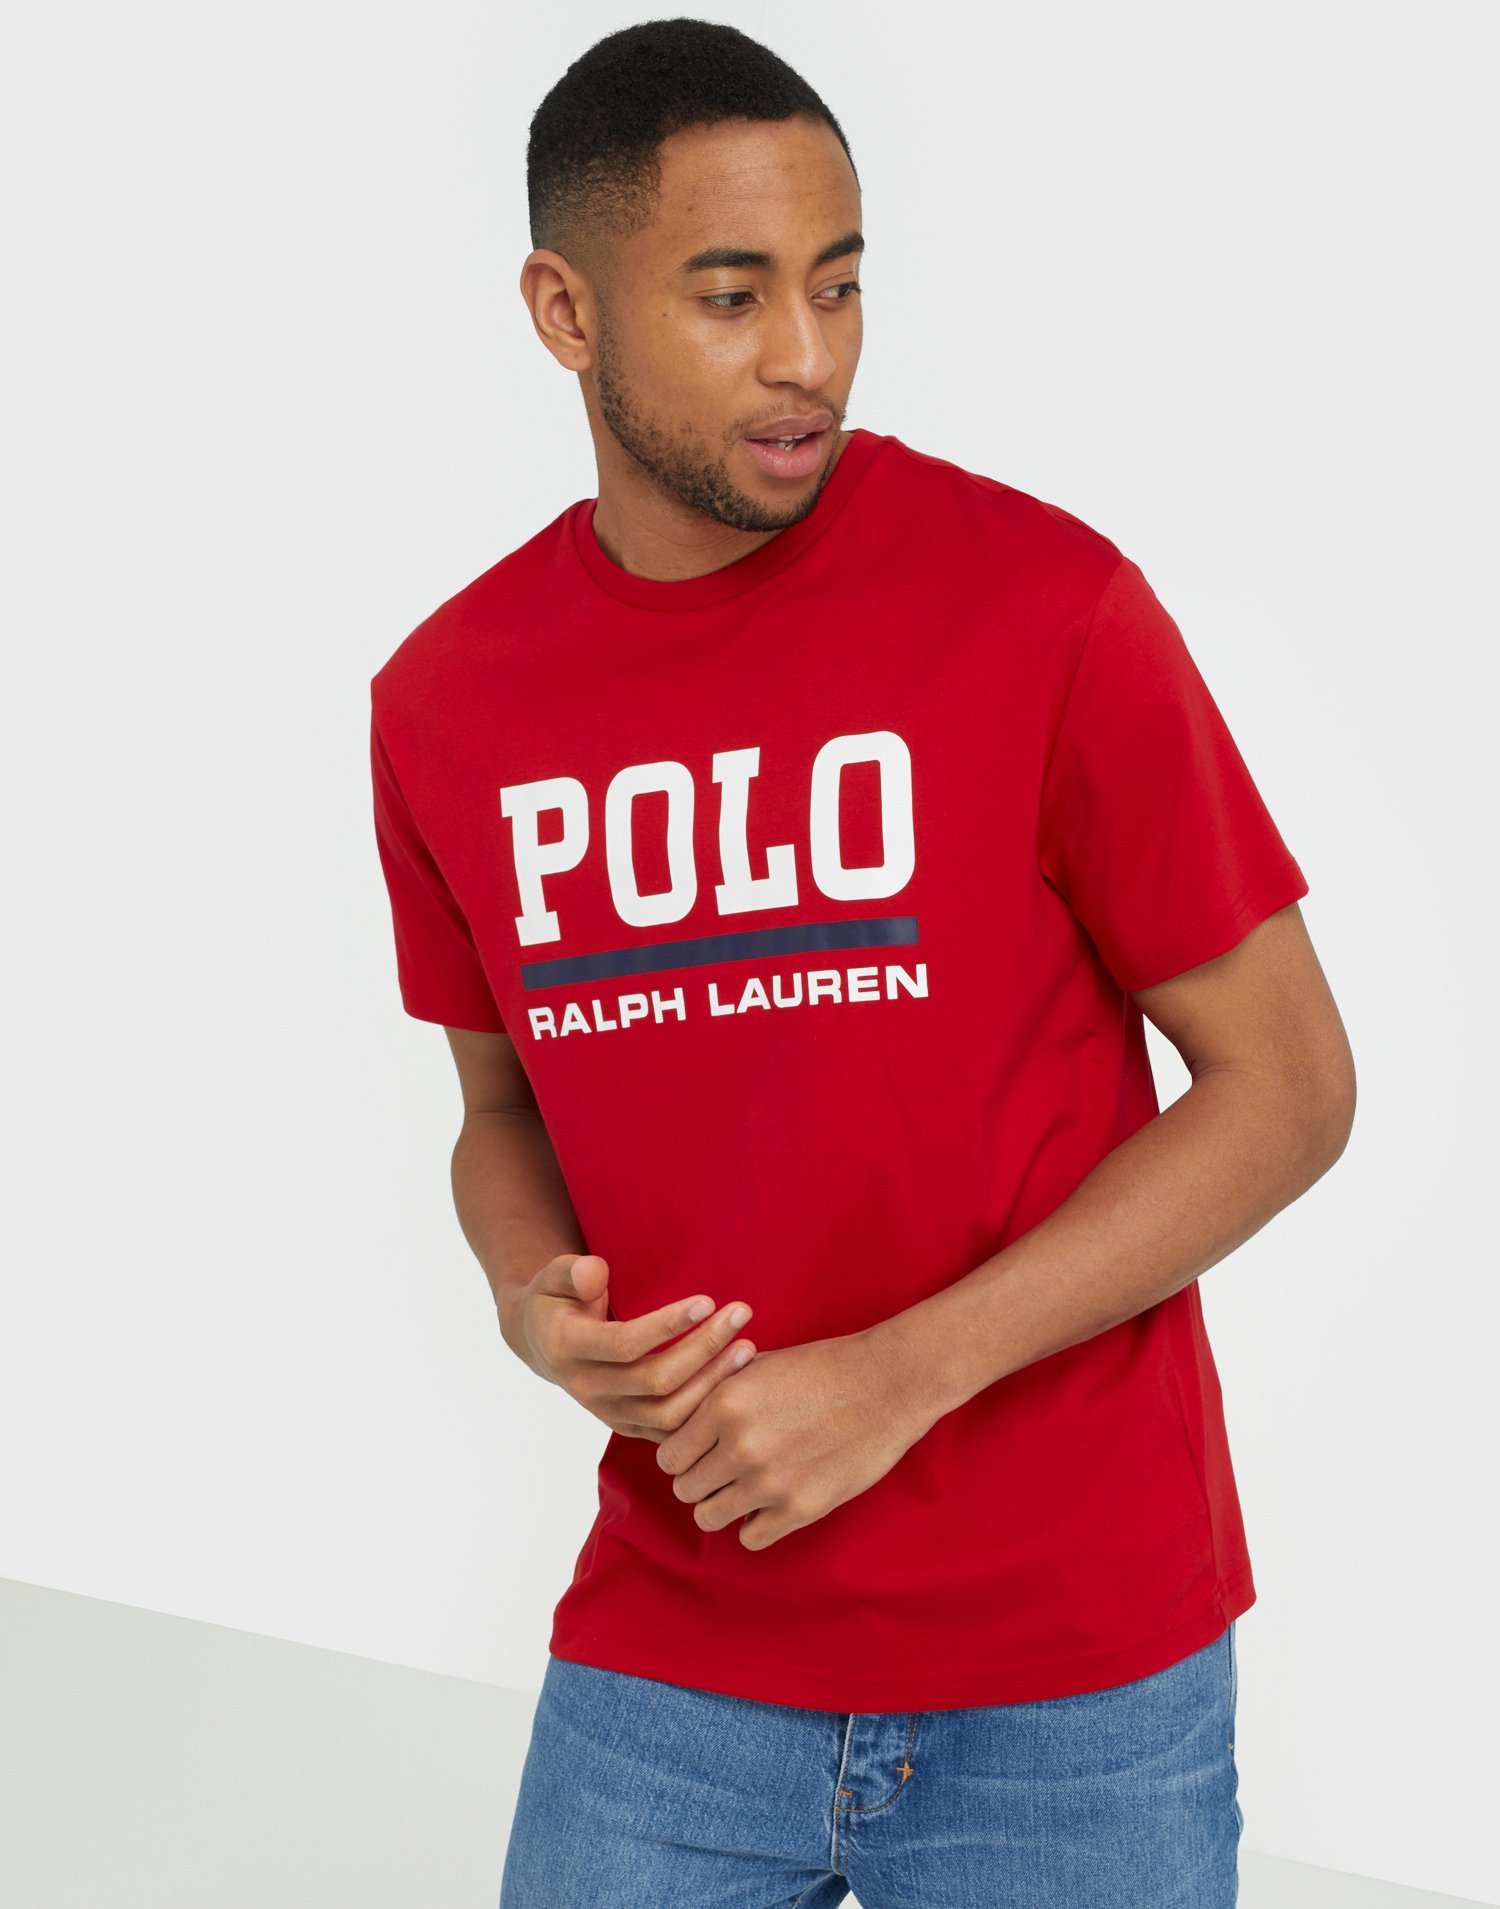 polo ralph lauren red t shirt